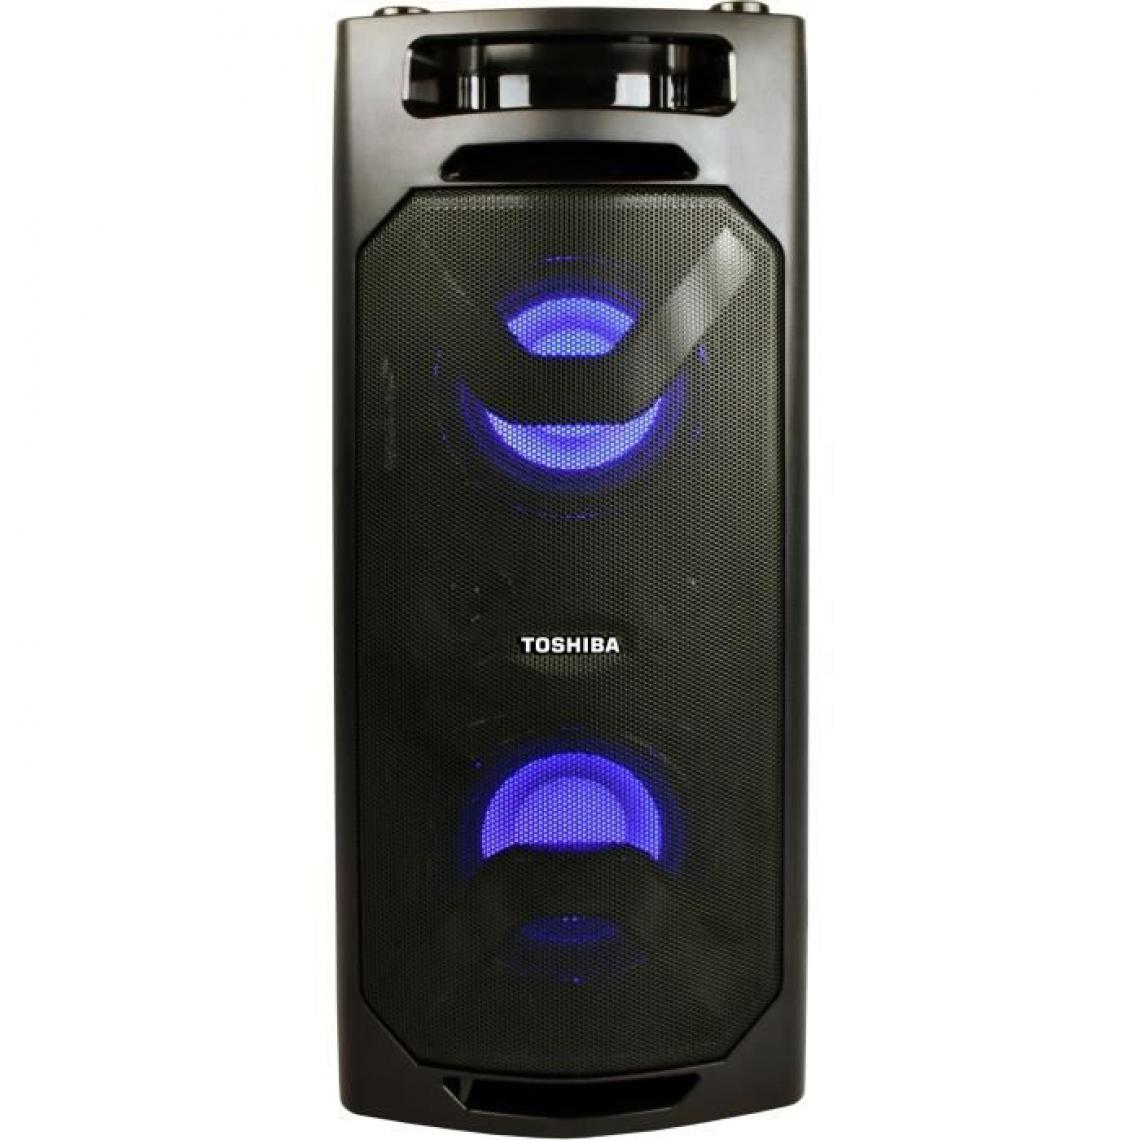 Toshiba - TOSHIBA - Maxi enceinte Bluetooth - TY-ASC-50 - Enceintes Hifi